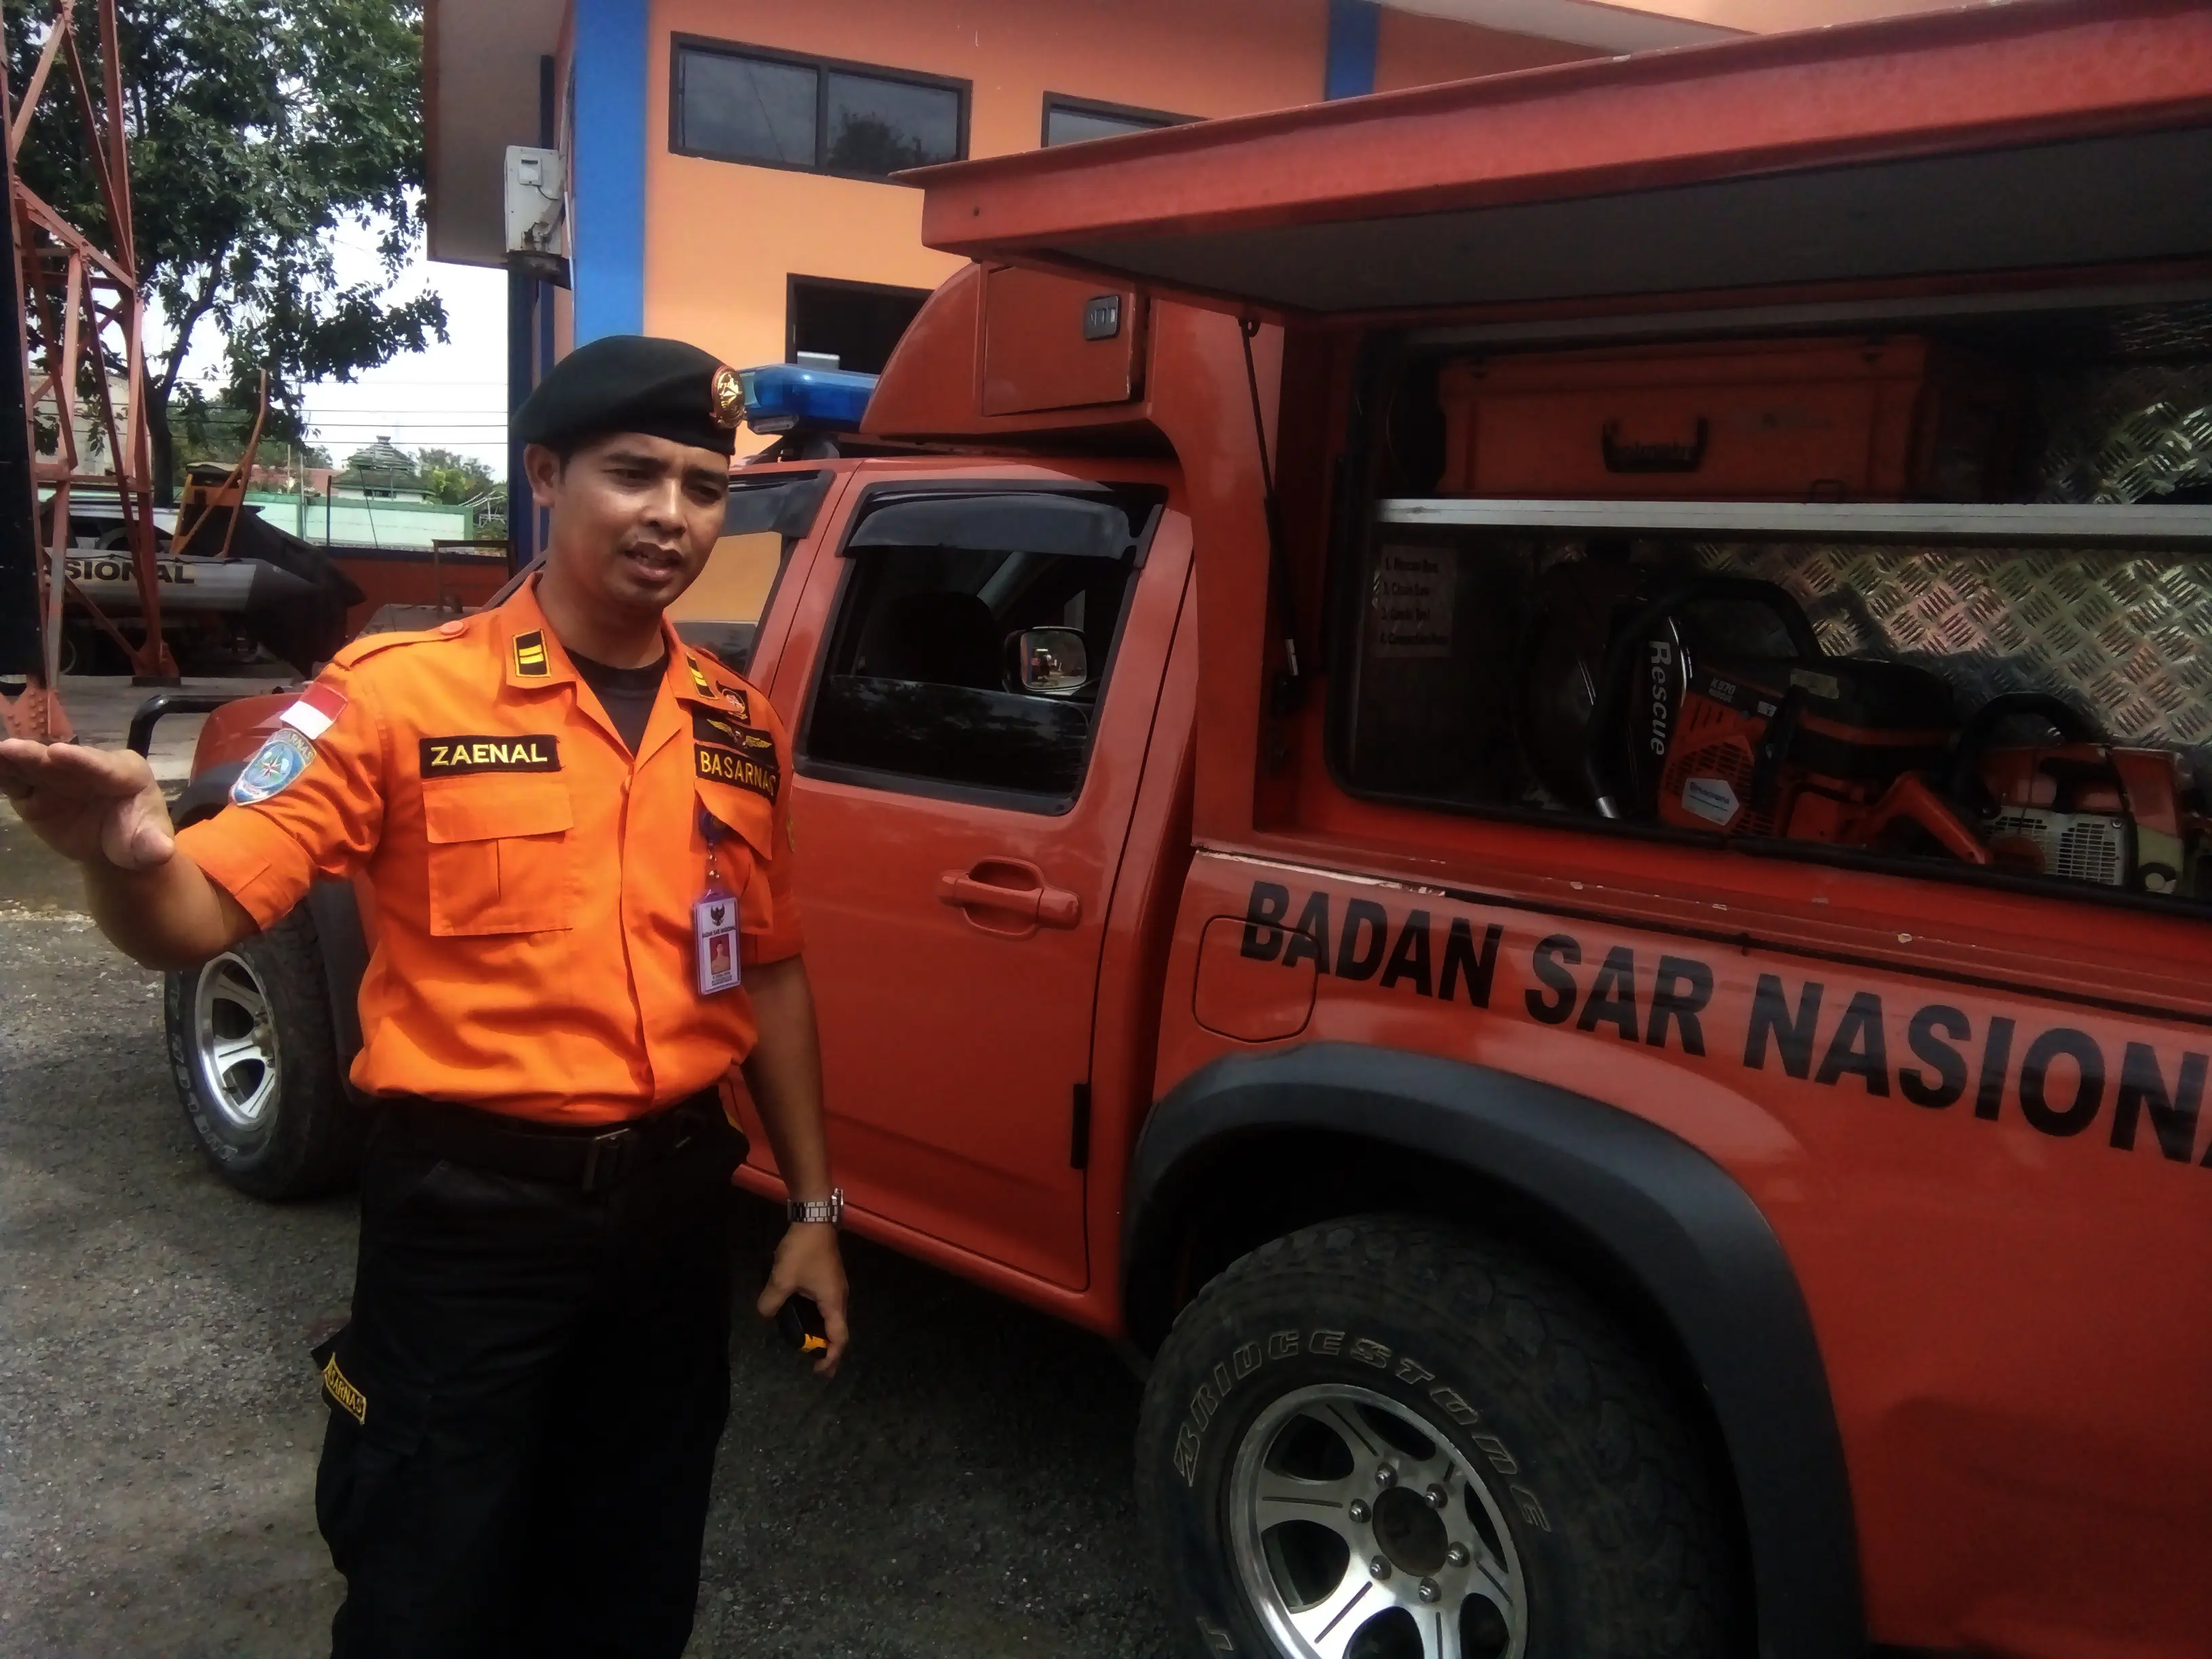 Basarnas telah memetakan wilayah rawan bencana di Provinsi Banten, agar masyarakat lebih siaga terhadap banjir dan longsor. (Liputan6.com/Yandhi Deslatama)